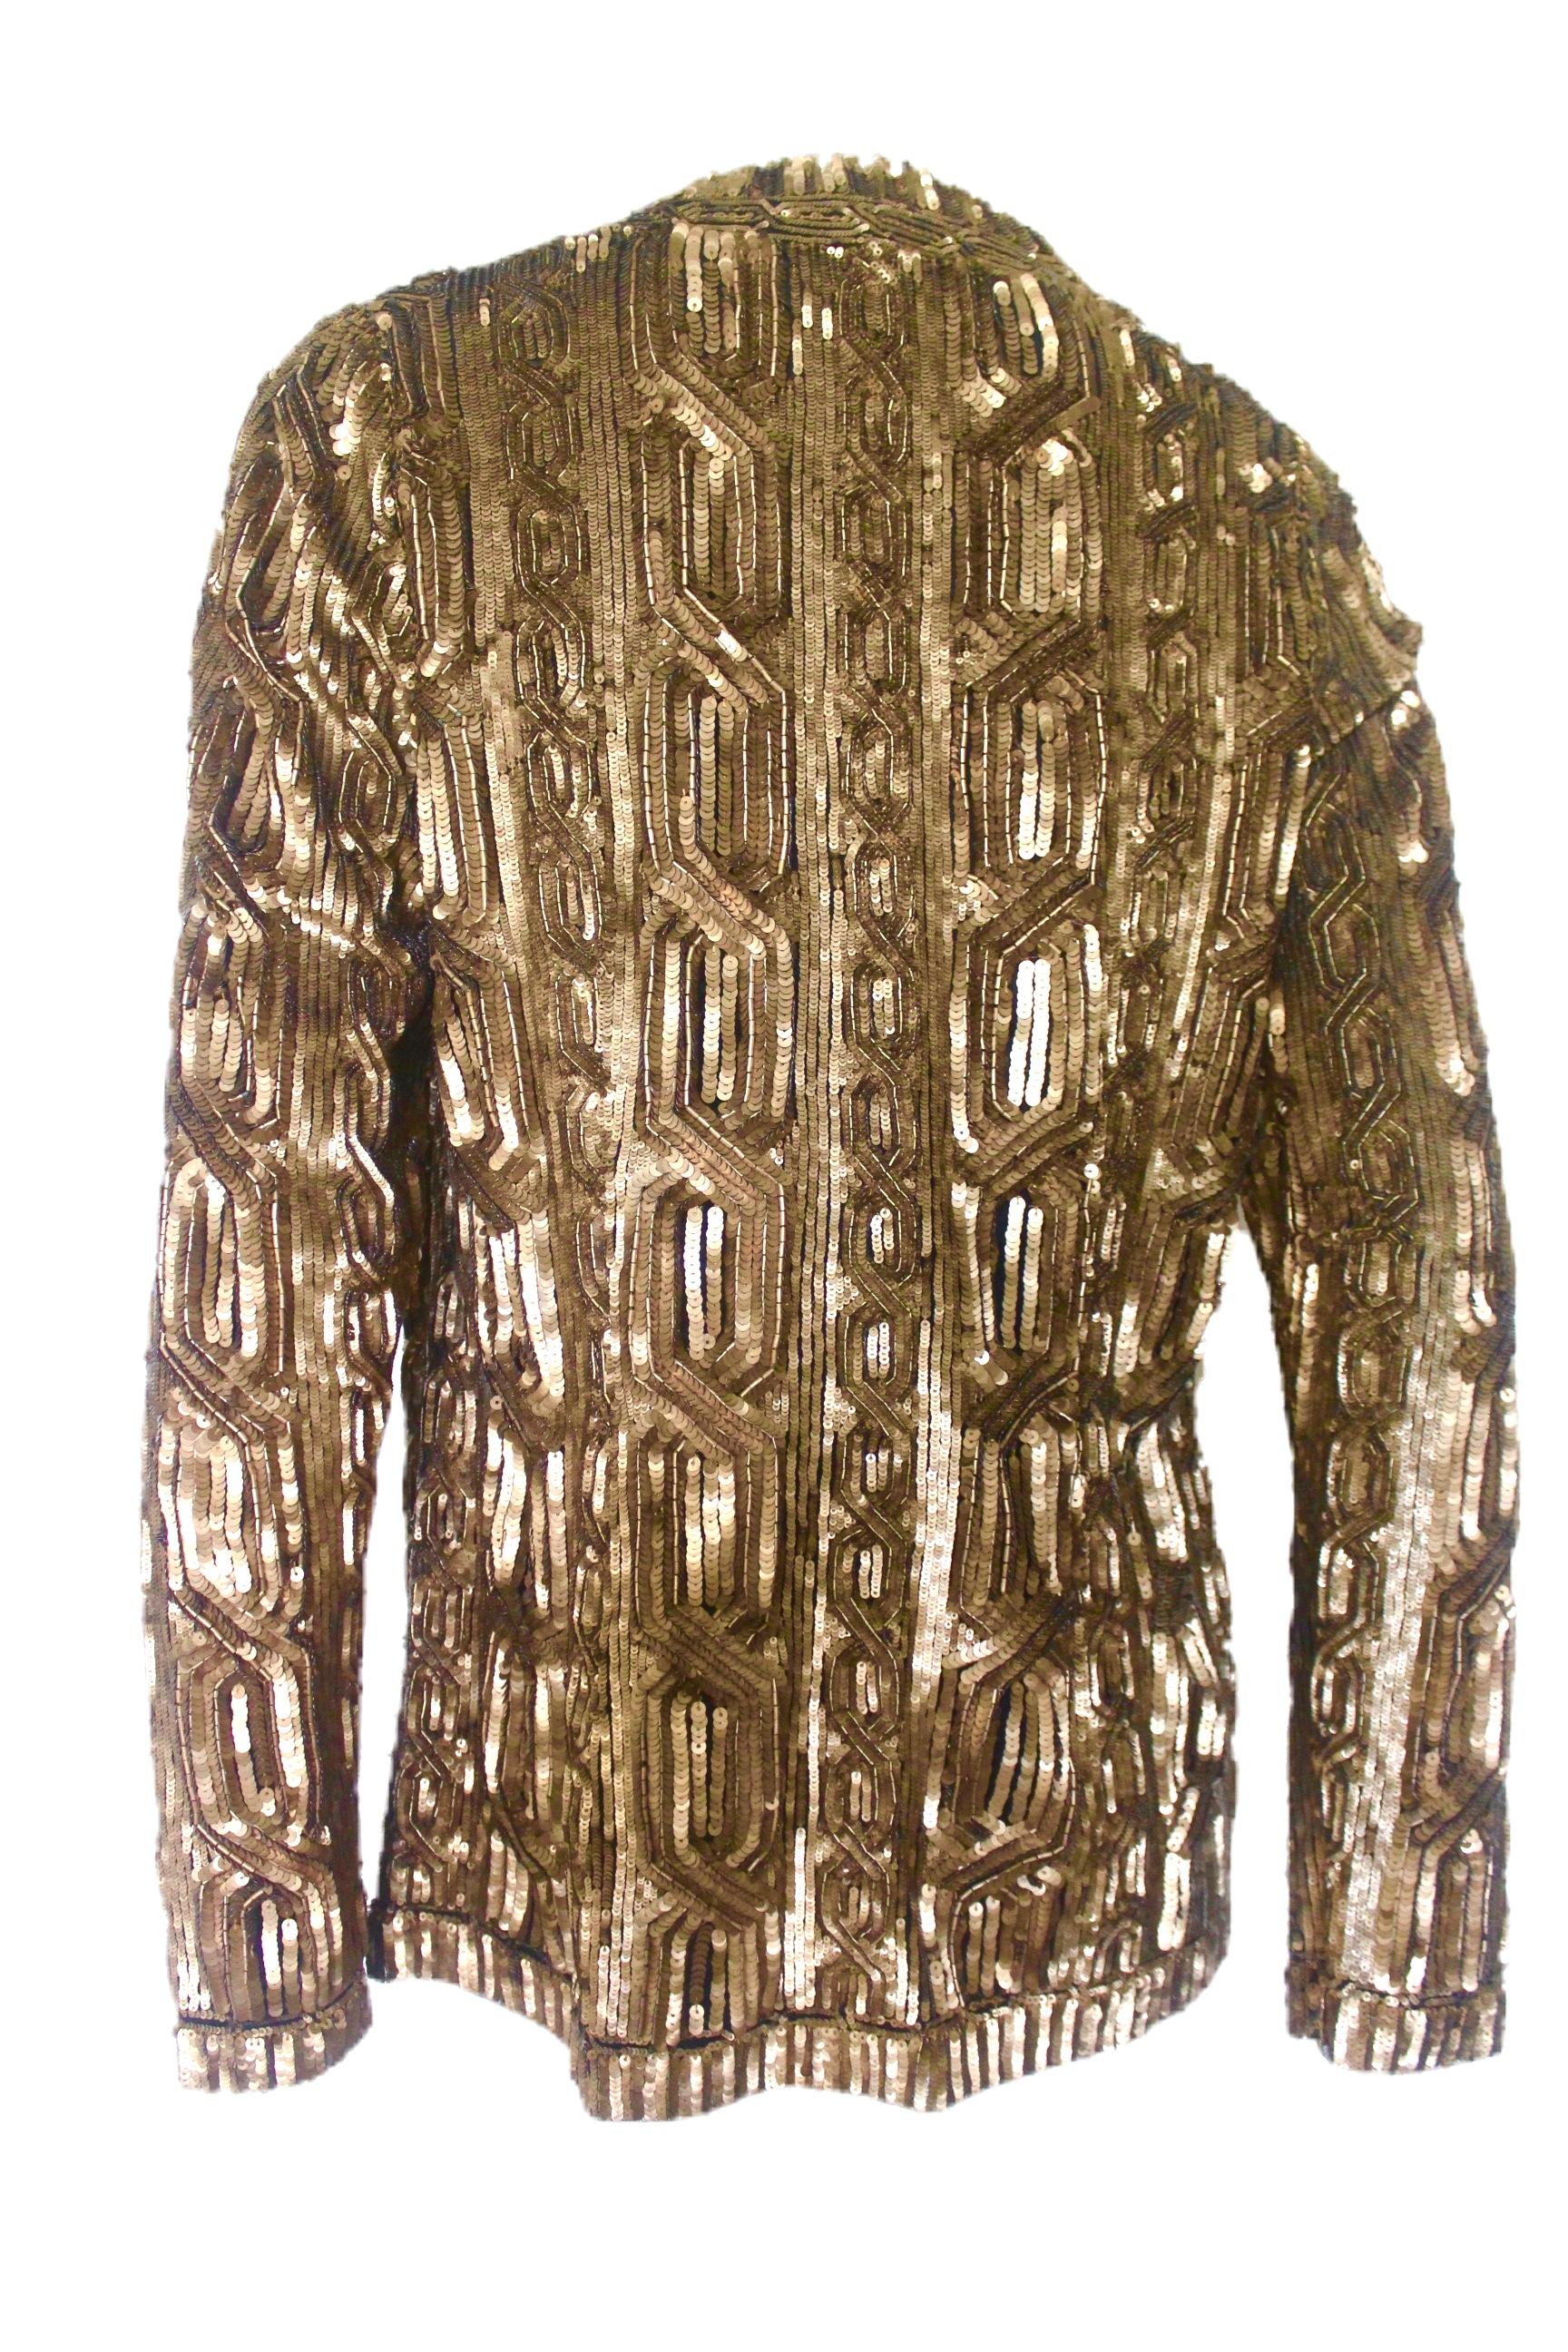 Ralph Lauren Gold Sequin Evening Jacket 2